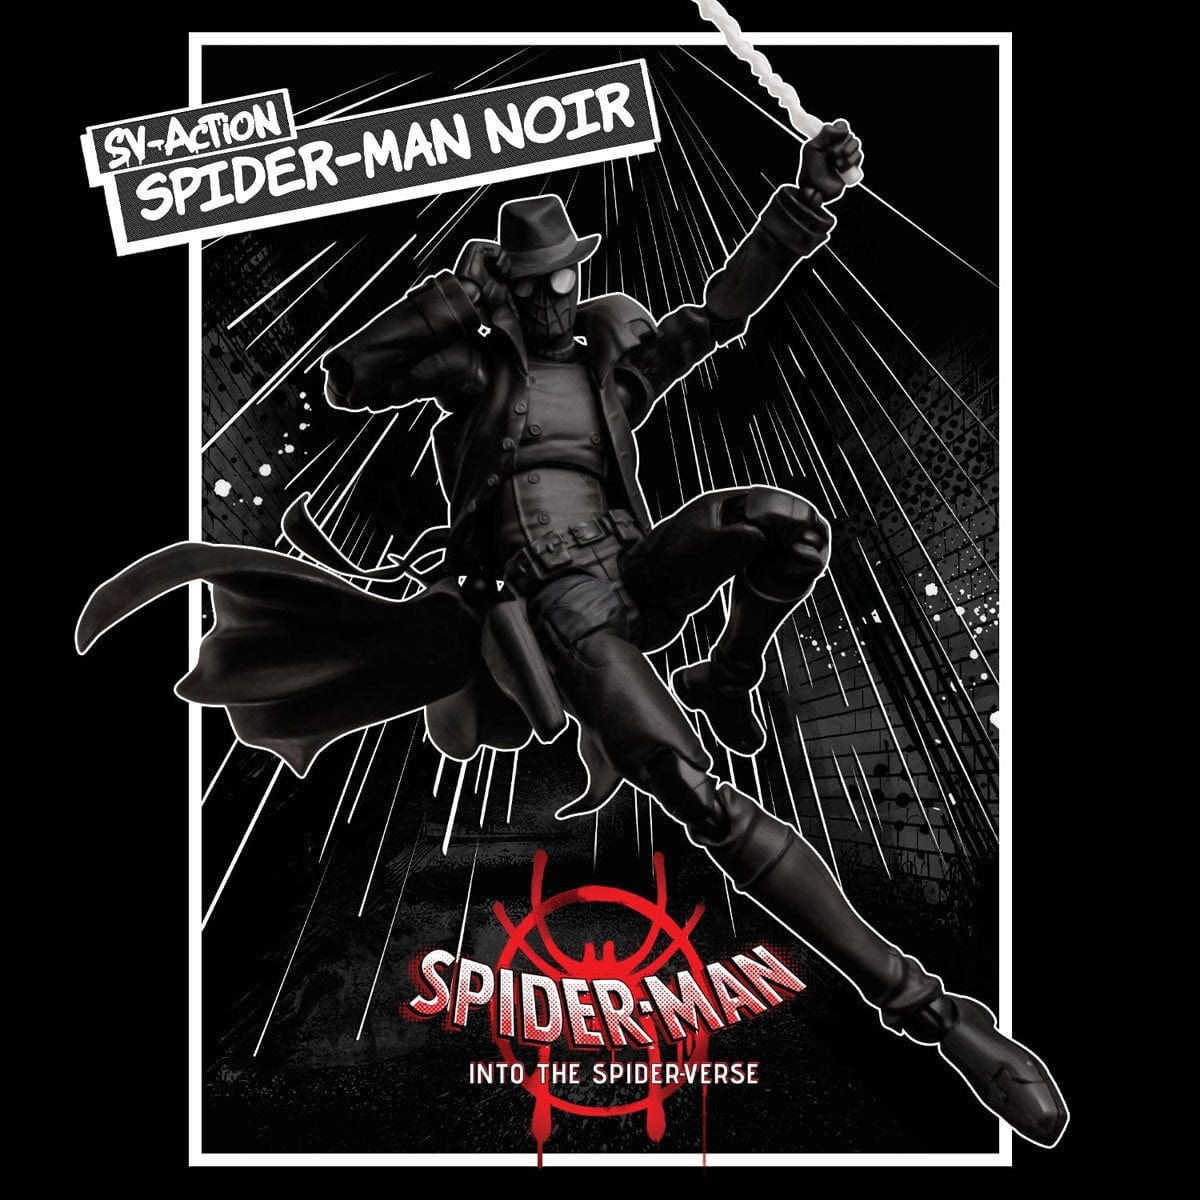 SV-Action Spider-Man: Into the Spider-Verse Spider-Man Noir Action Figure